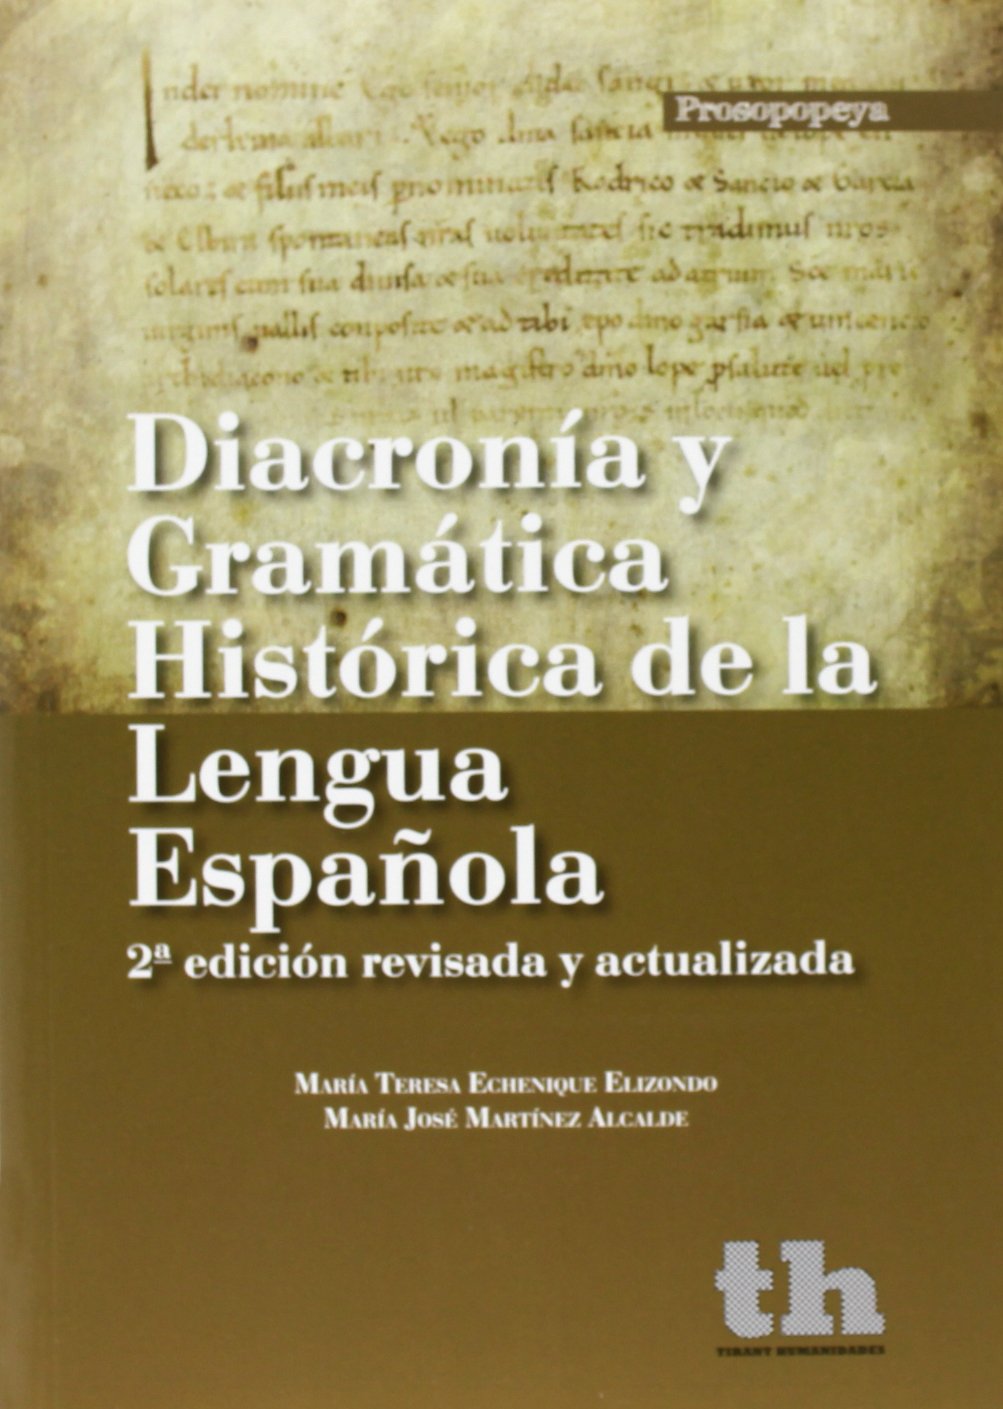 Imagen de portada del libro Diacronía y gramática histórica de la lengua española